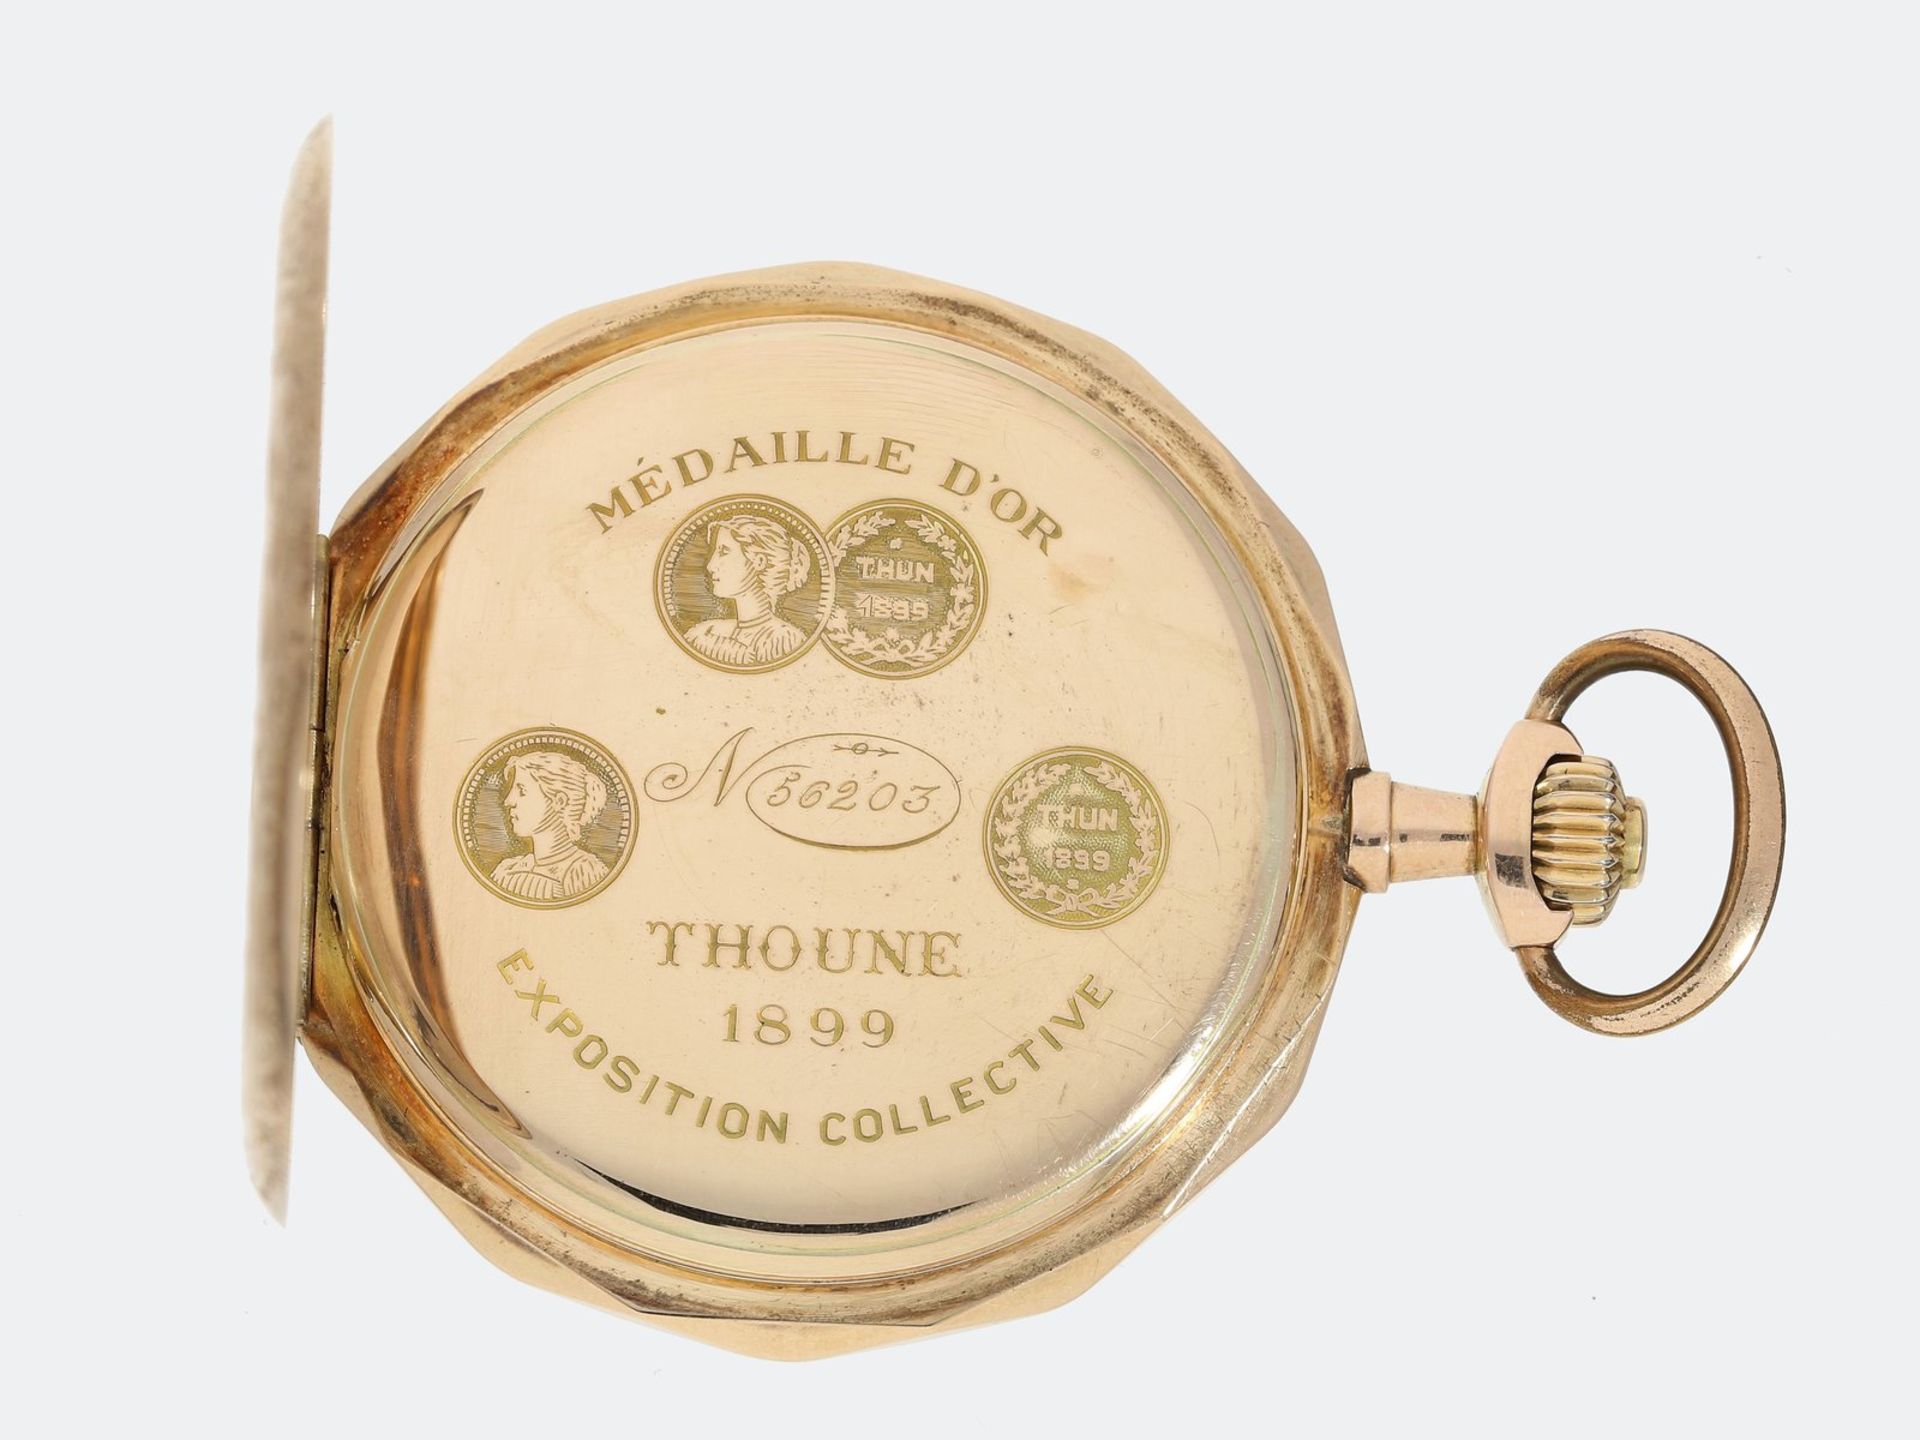 Taschenuhr: ausgesprochen schöne Jugendstil-Savonnette, um 1900, Exposition Collective, Thoune - Bild 3 aus 4